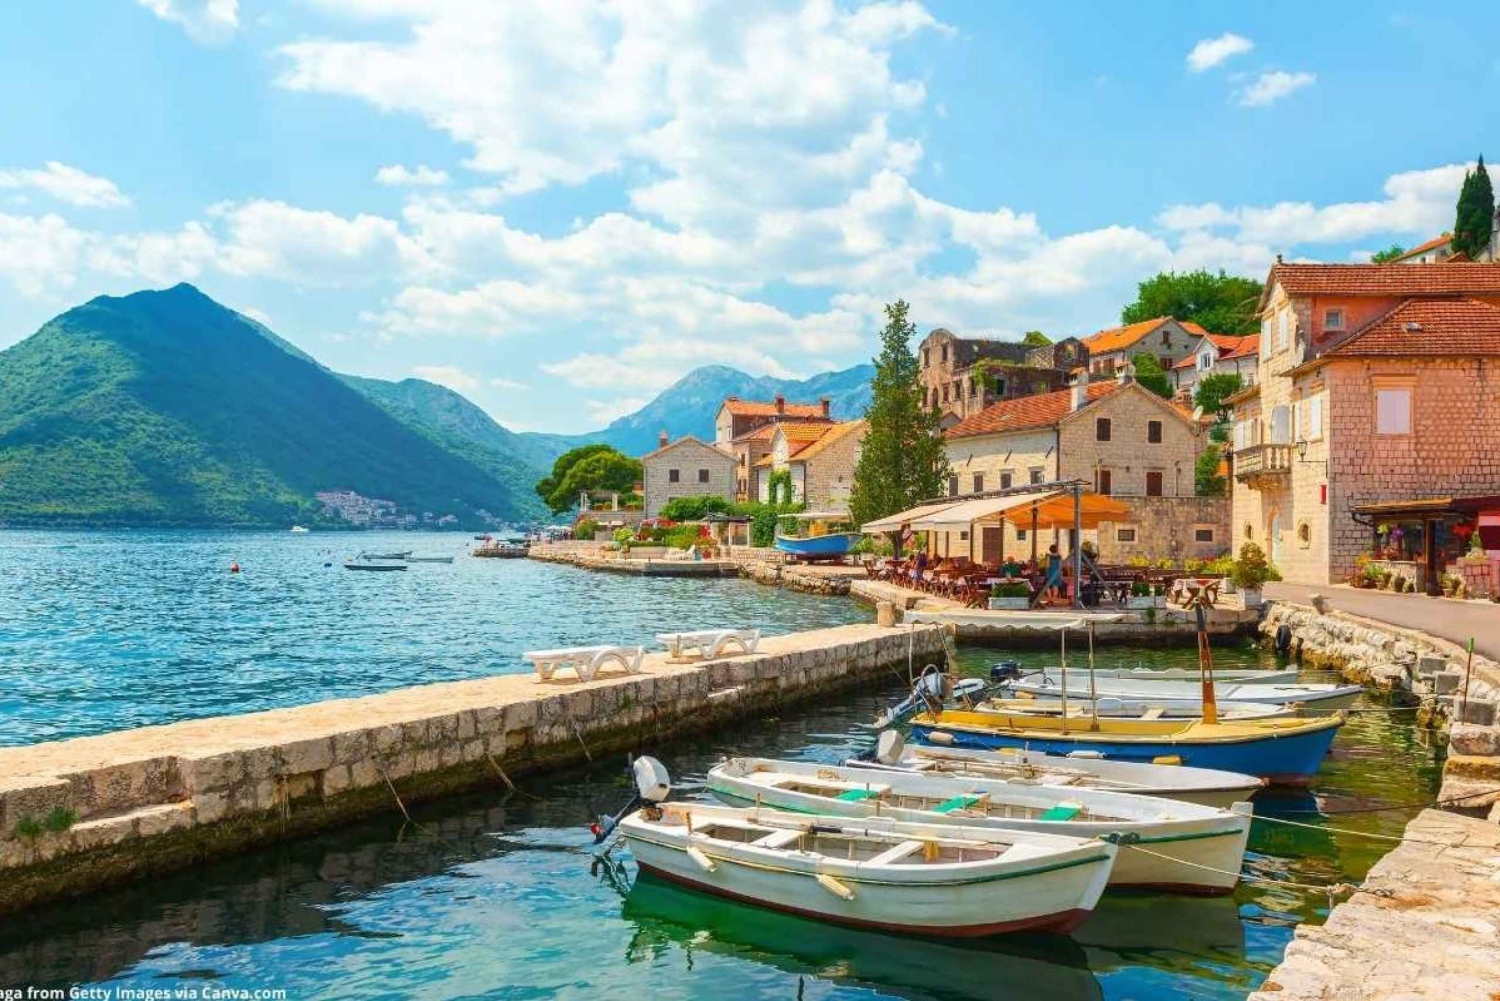 From Dubrovnik: Montenegro Coastline Private Tour